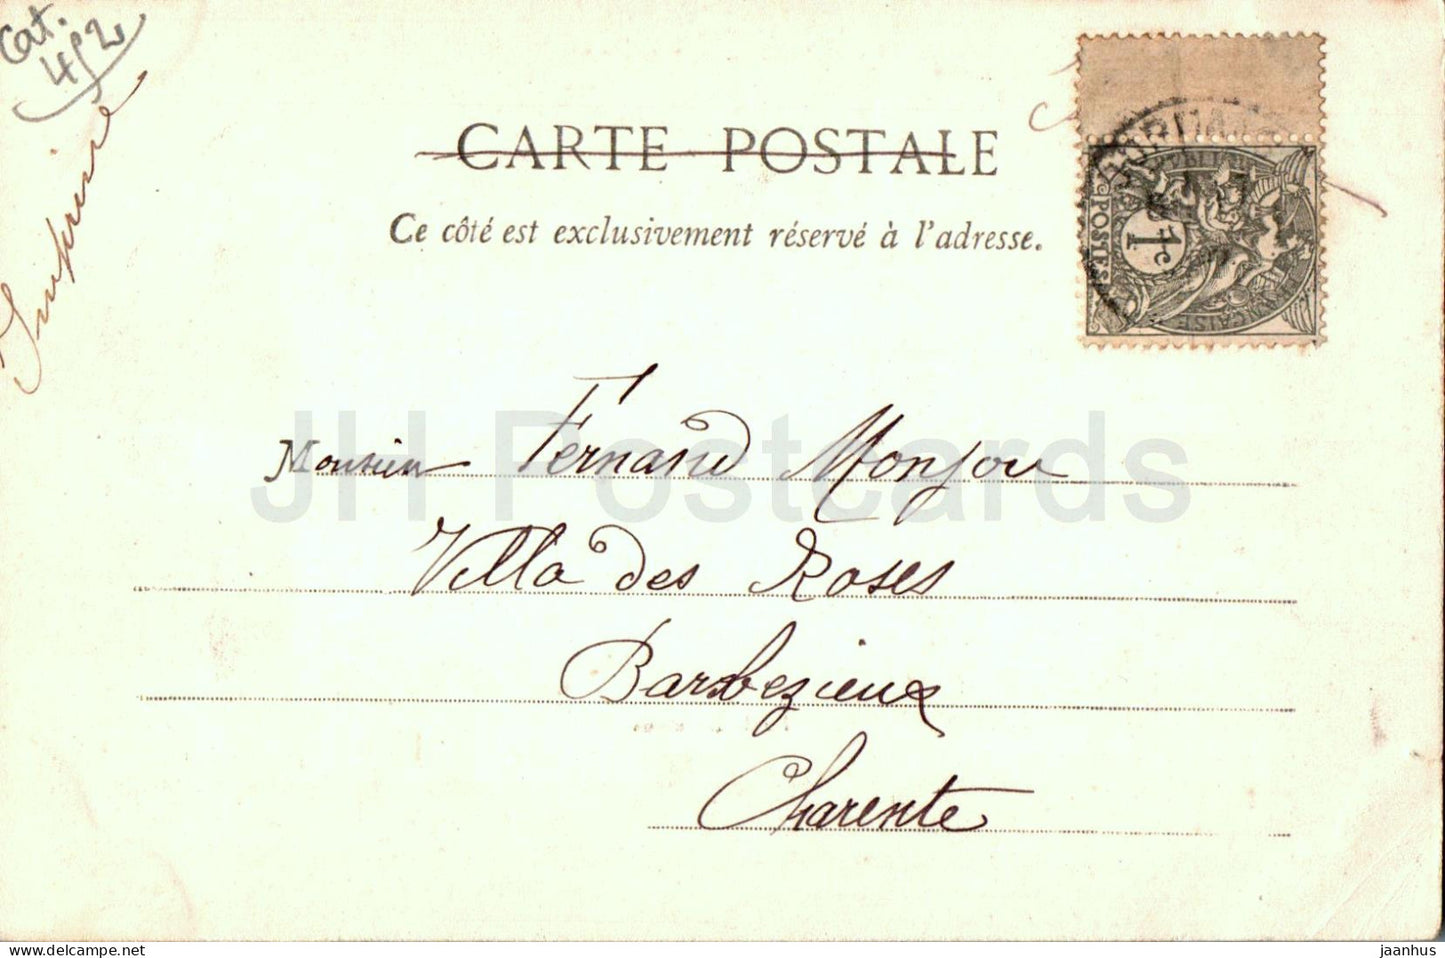 Ile de Dormans – alte Postkarte – 1902 – Frankreich – gebraucht 